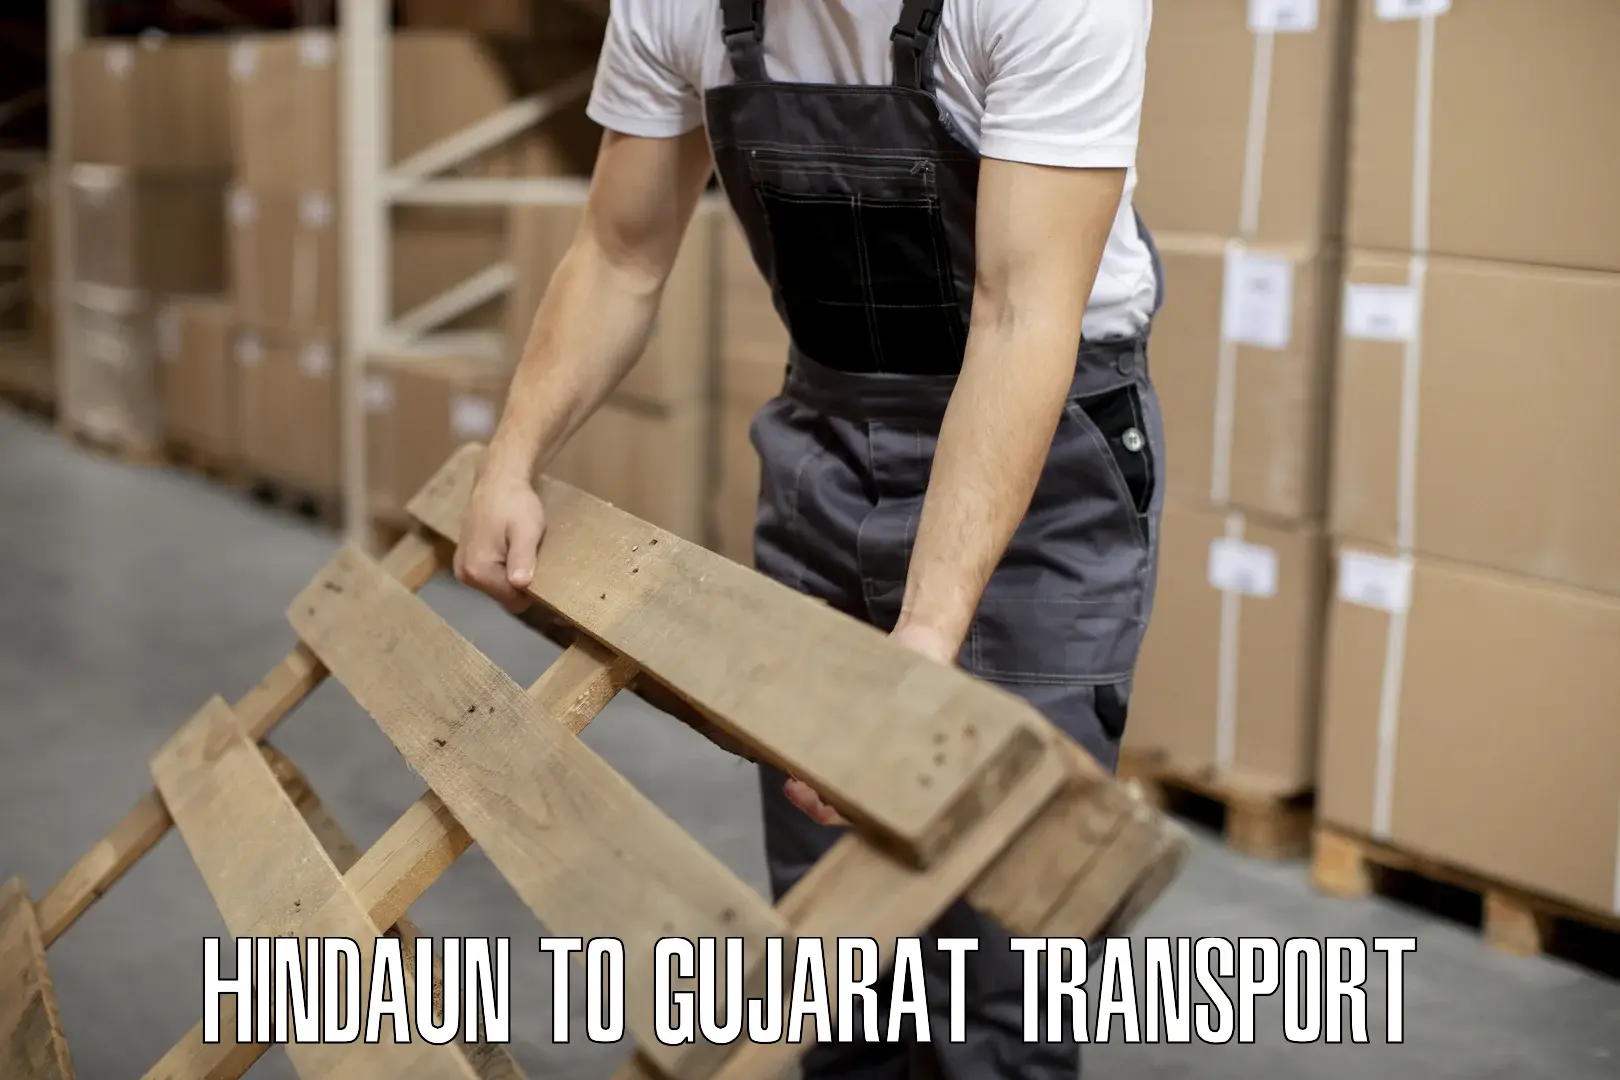 Bike transport service Hindaun to Gujarat